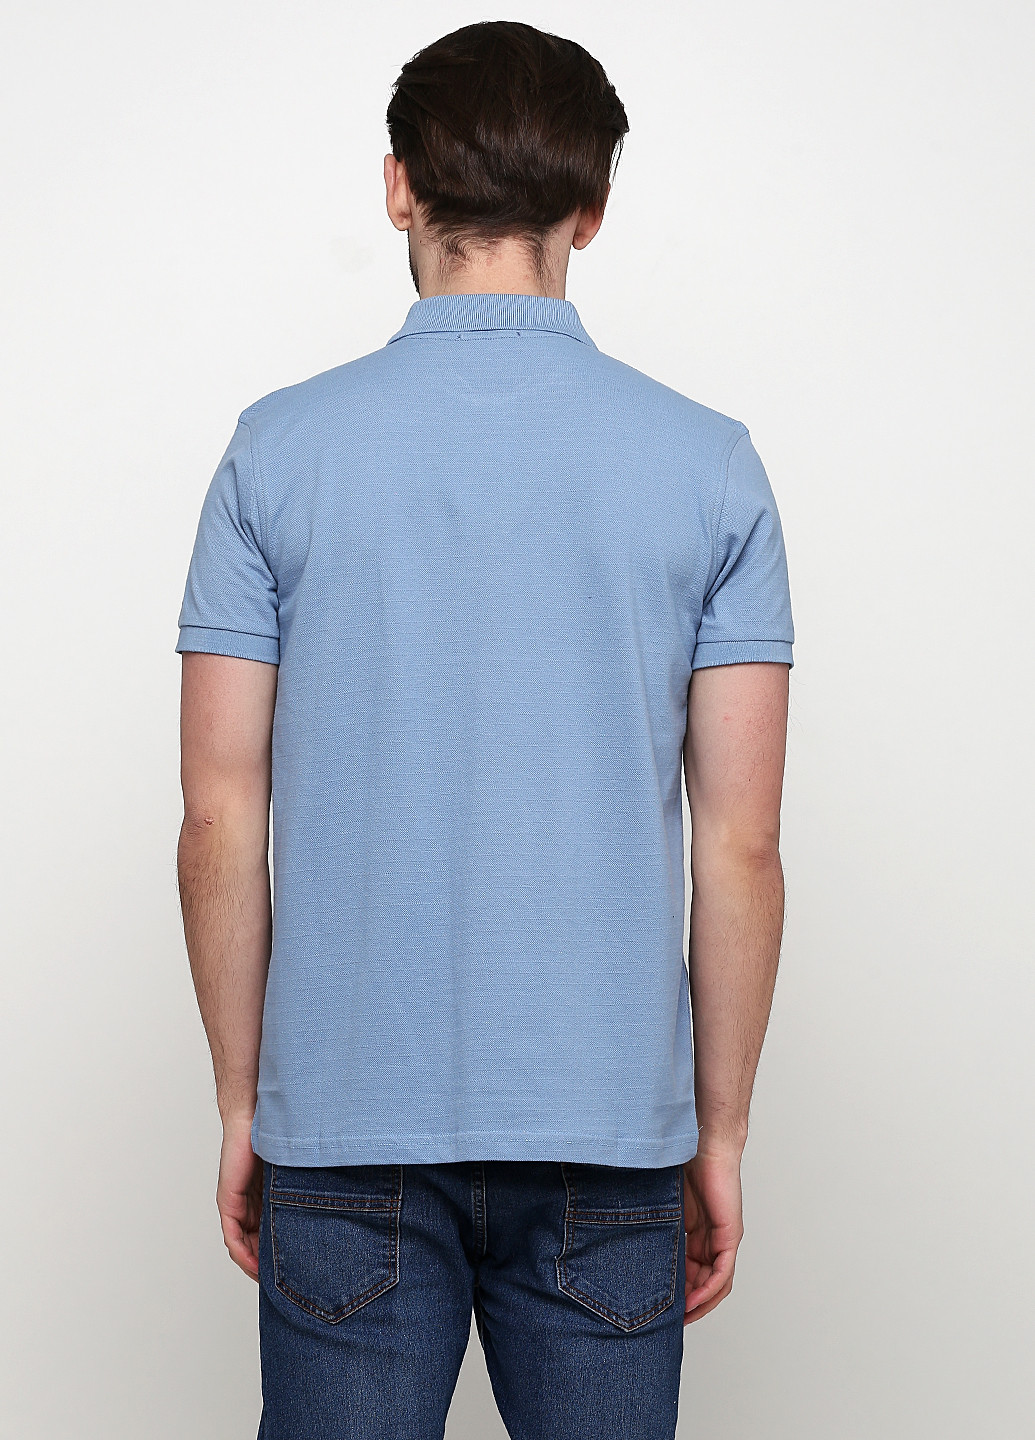 Голубой футболка-поло для мужчин Vip Ston однотонная